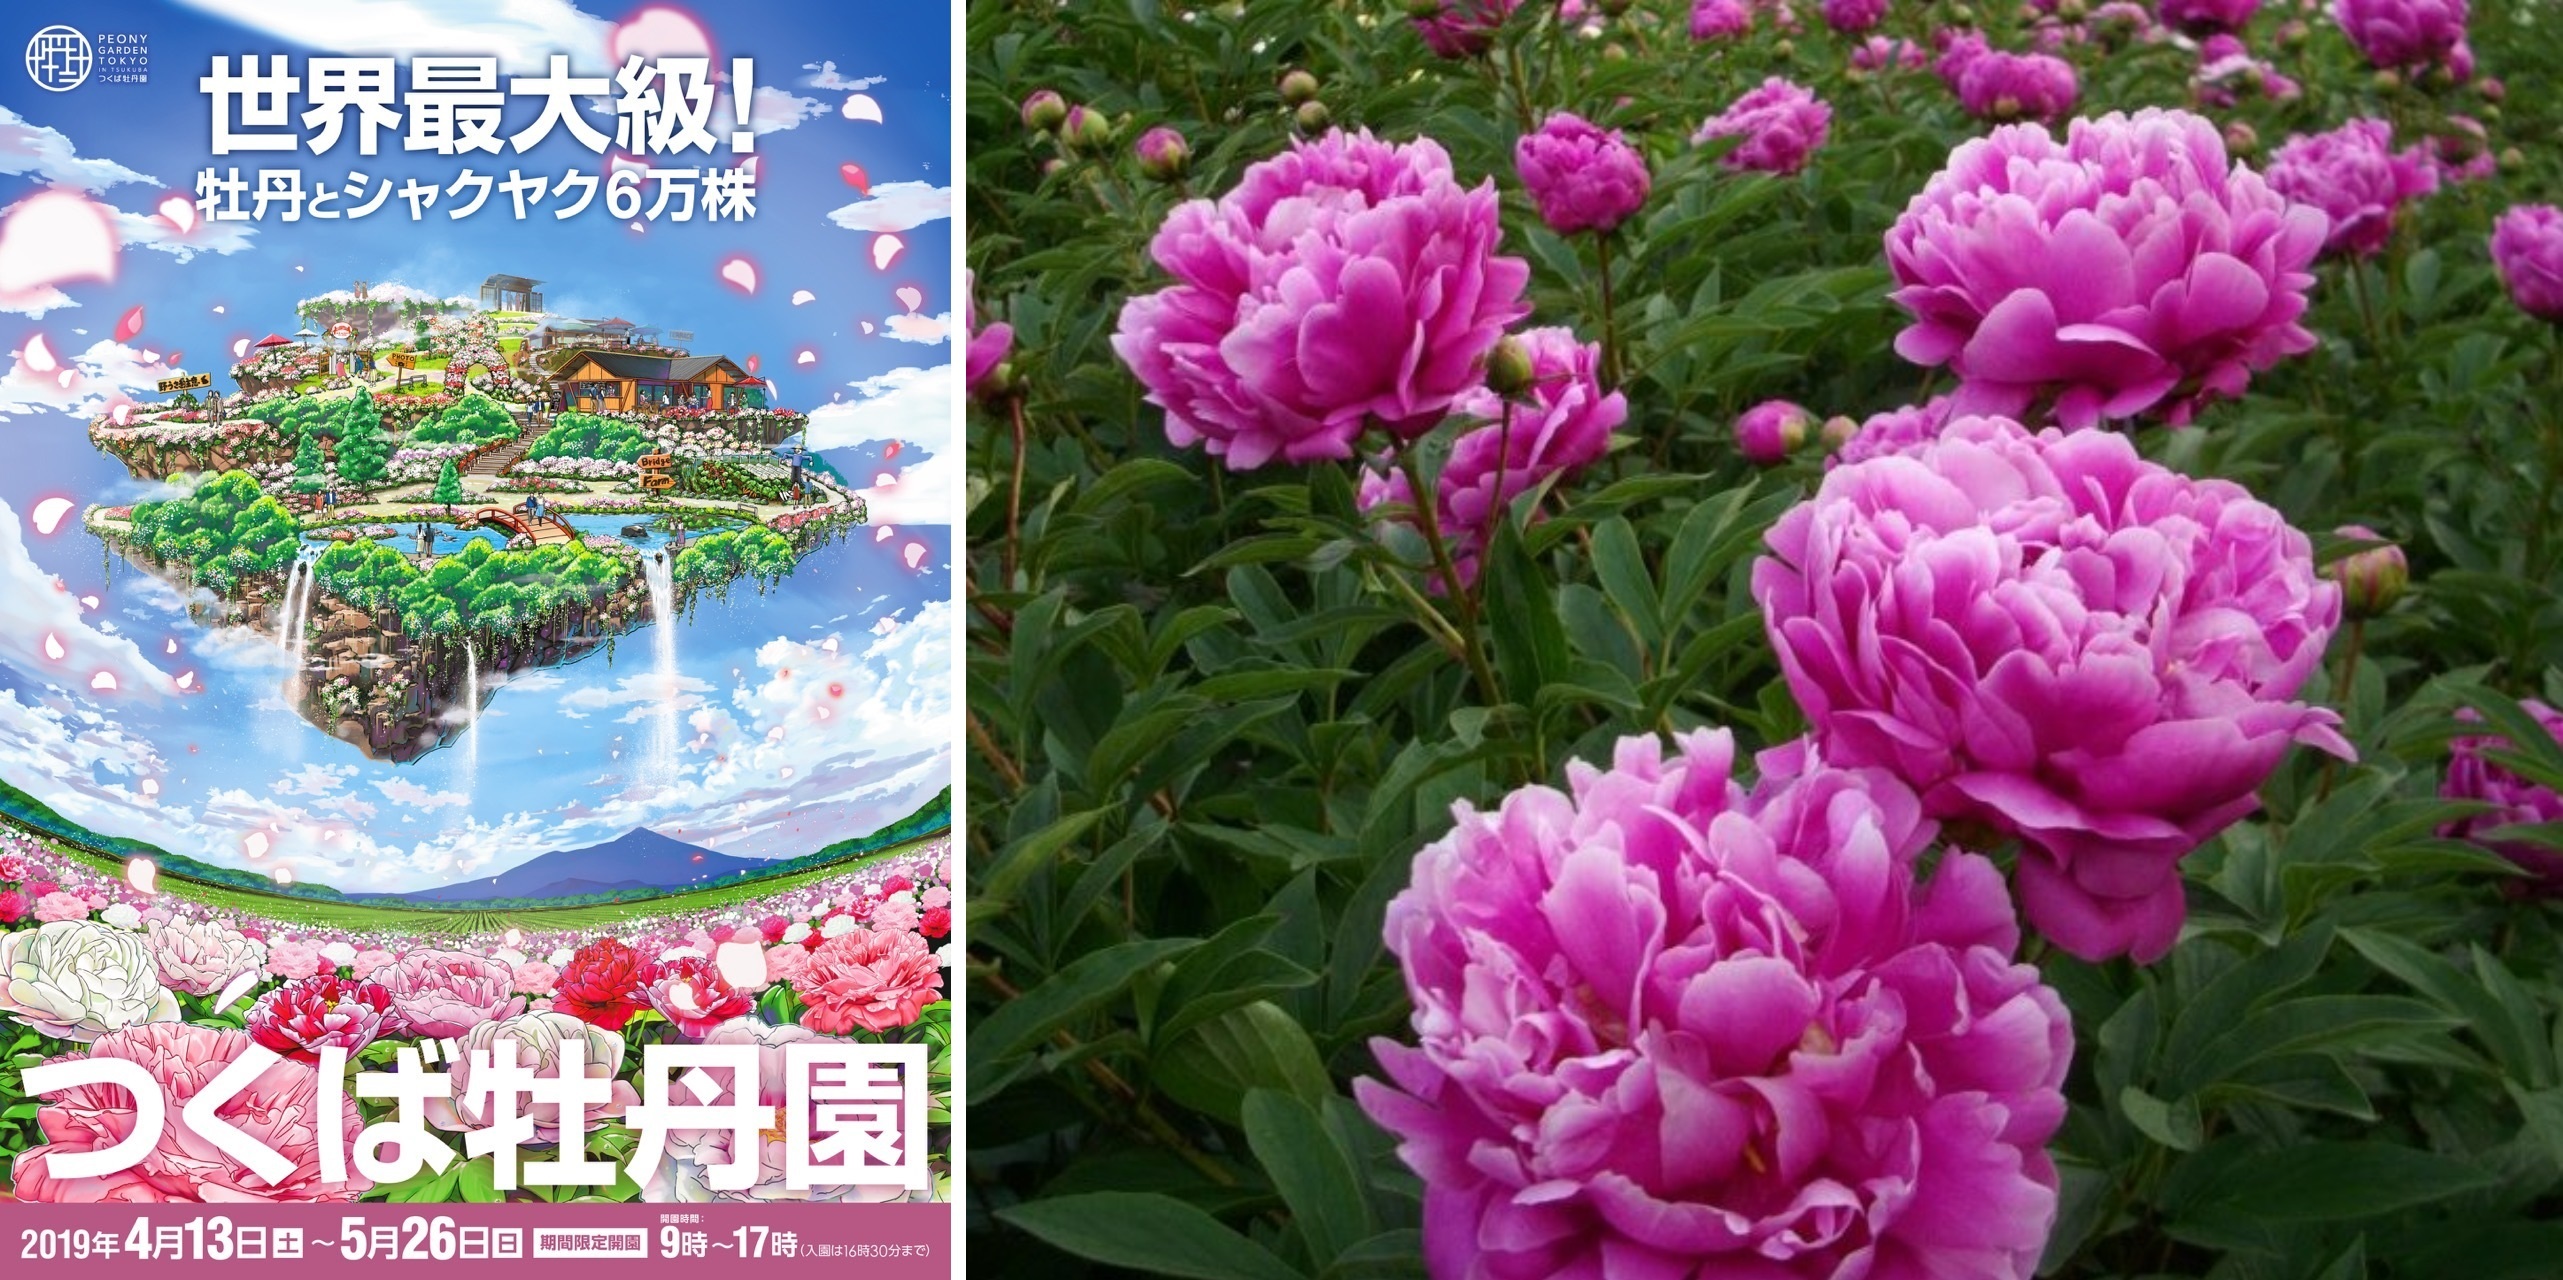 世界最大級の牡丹園 つくば牡丹園 が4月13日 土 より開園 新元号 令和 を花の名前に命名 つくば牡丹園のプレスリリース